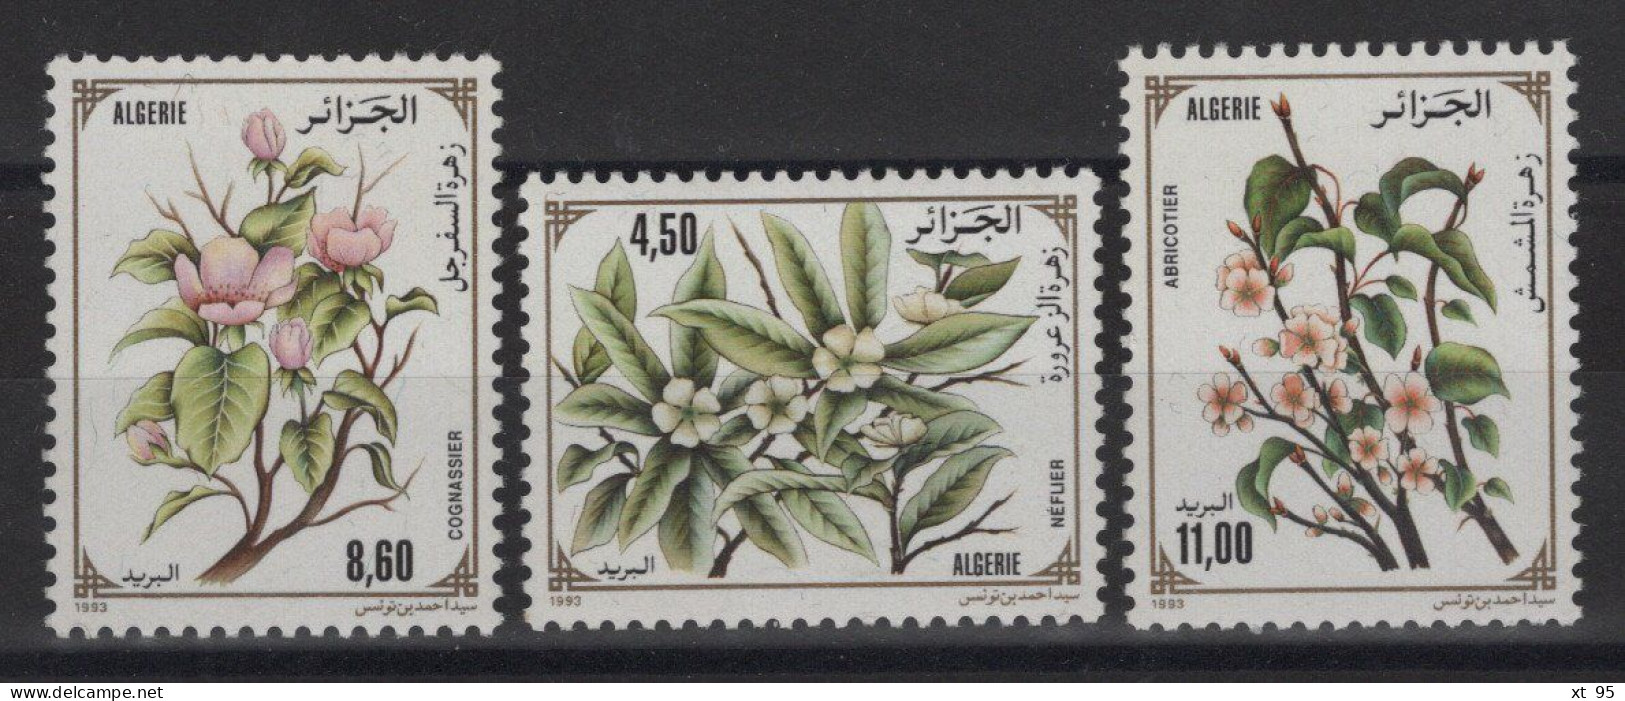 Algerie - N°1040 à 1042 - Flore - Cote 5.10€ - ** Neuf Sans Charniere - Algeria (1962-...)